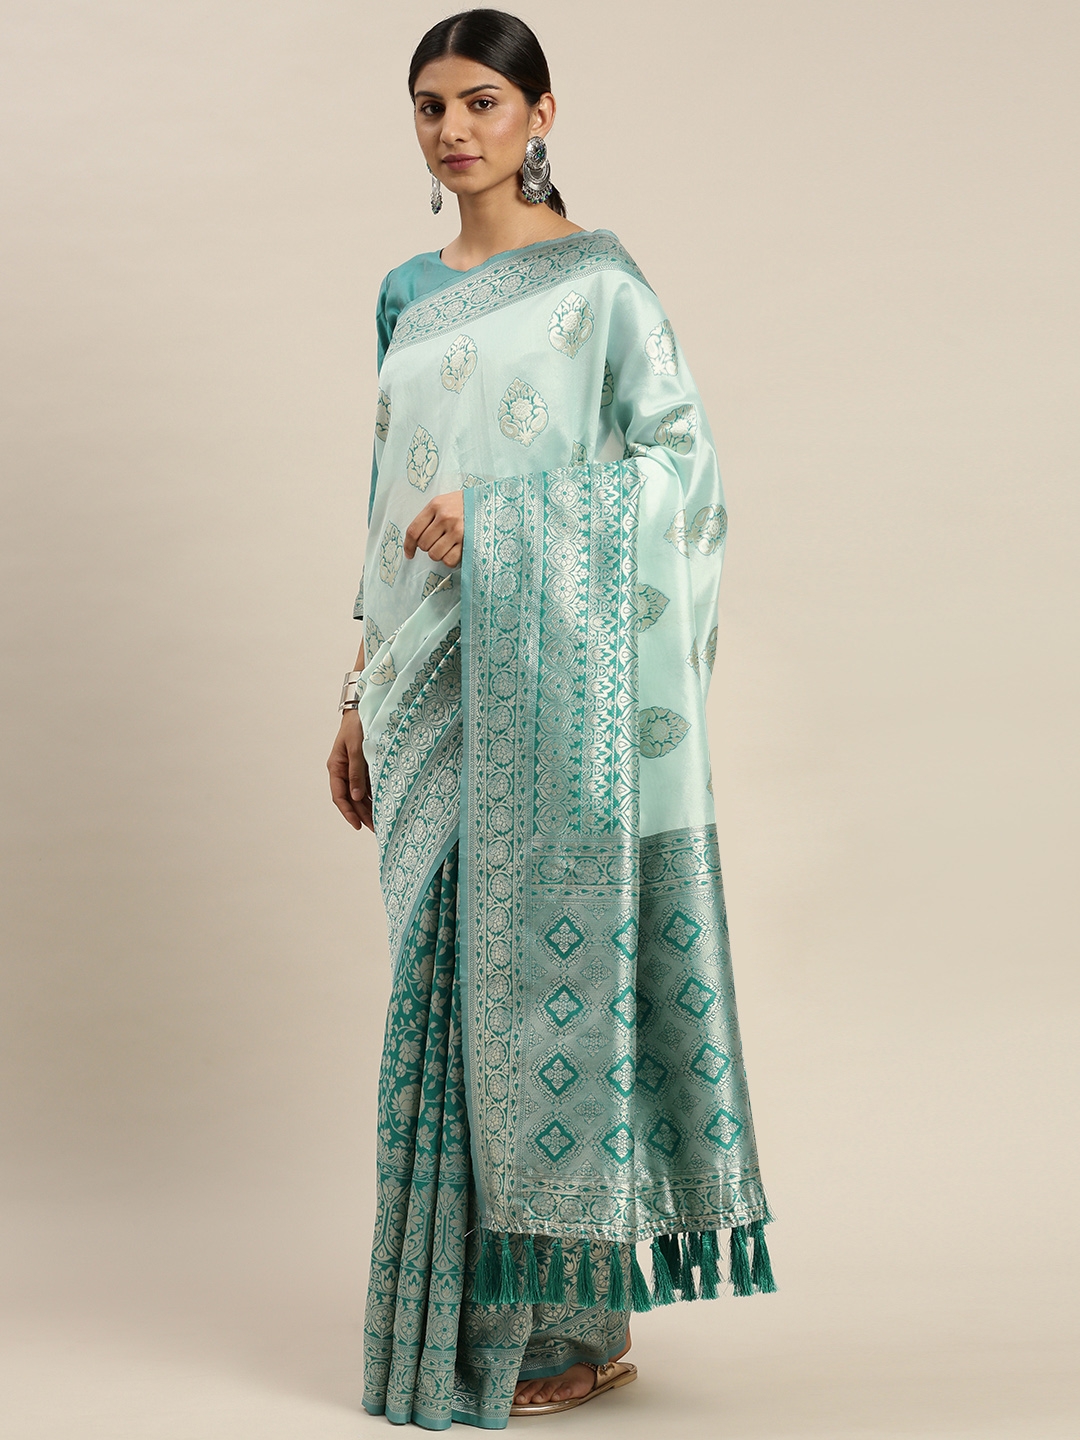 Om Shantam Sarees Turquoise Blue   Silver Toned Poly Silk Woven Design Banarasi Saree